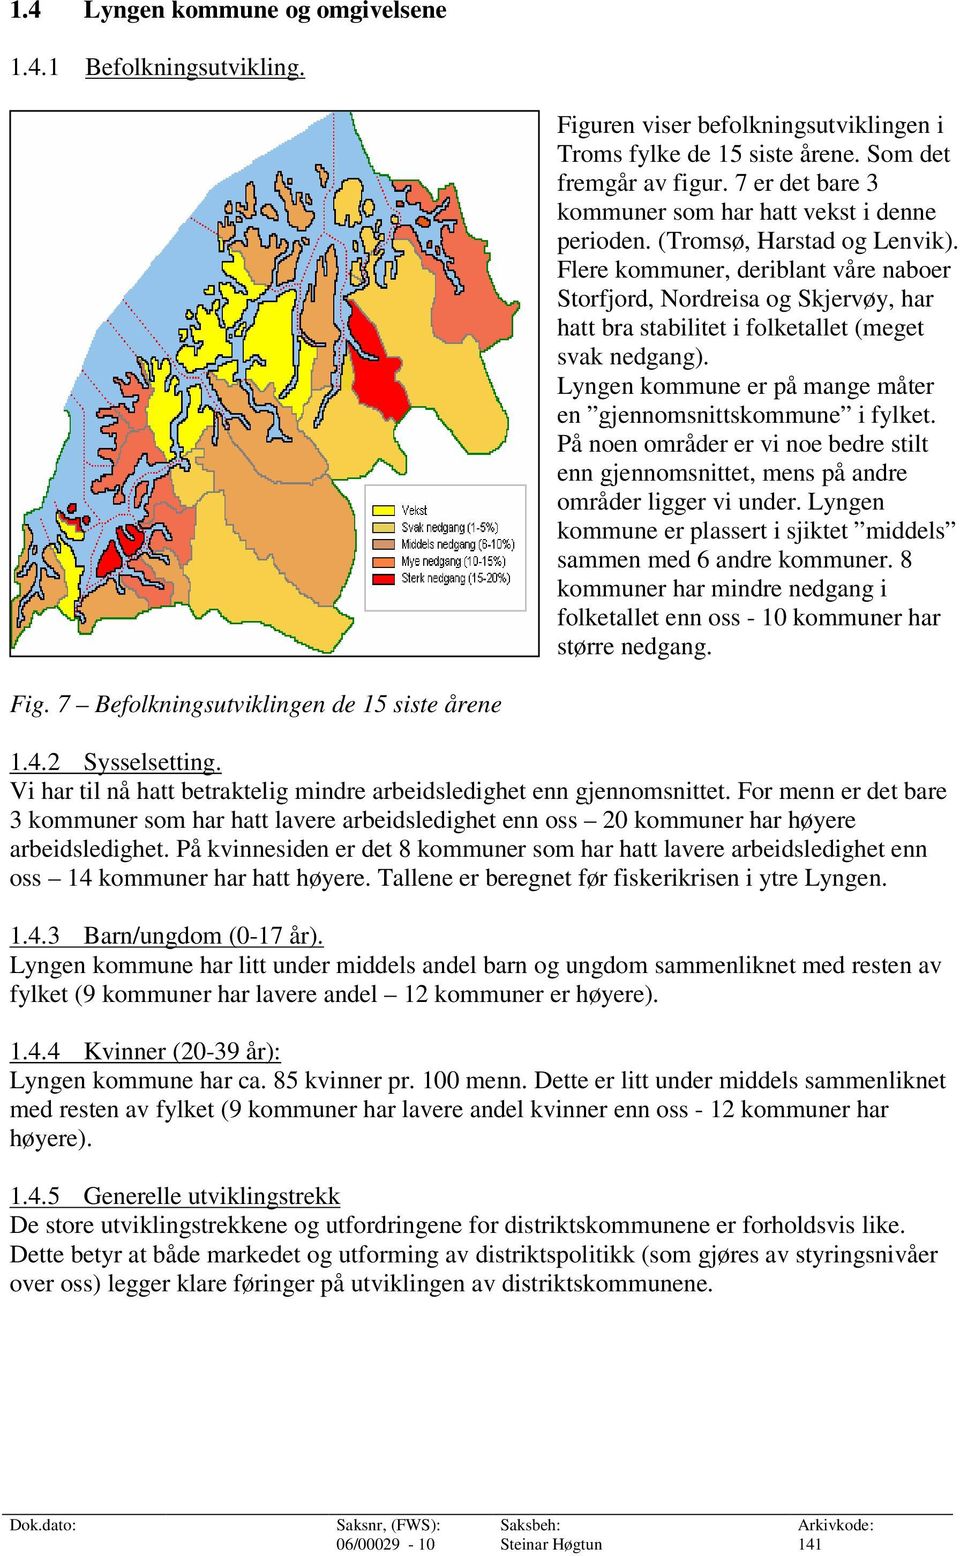 Flere kommuner, deriblant våre naboer Storfjord, Nordreisa og Skjervøy, har hatt bra stabilitet i folketallet (meget svak nedgang). Lyngen kommune er på mange måter en gjennomsnittskommune i fylket.